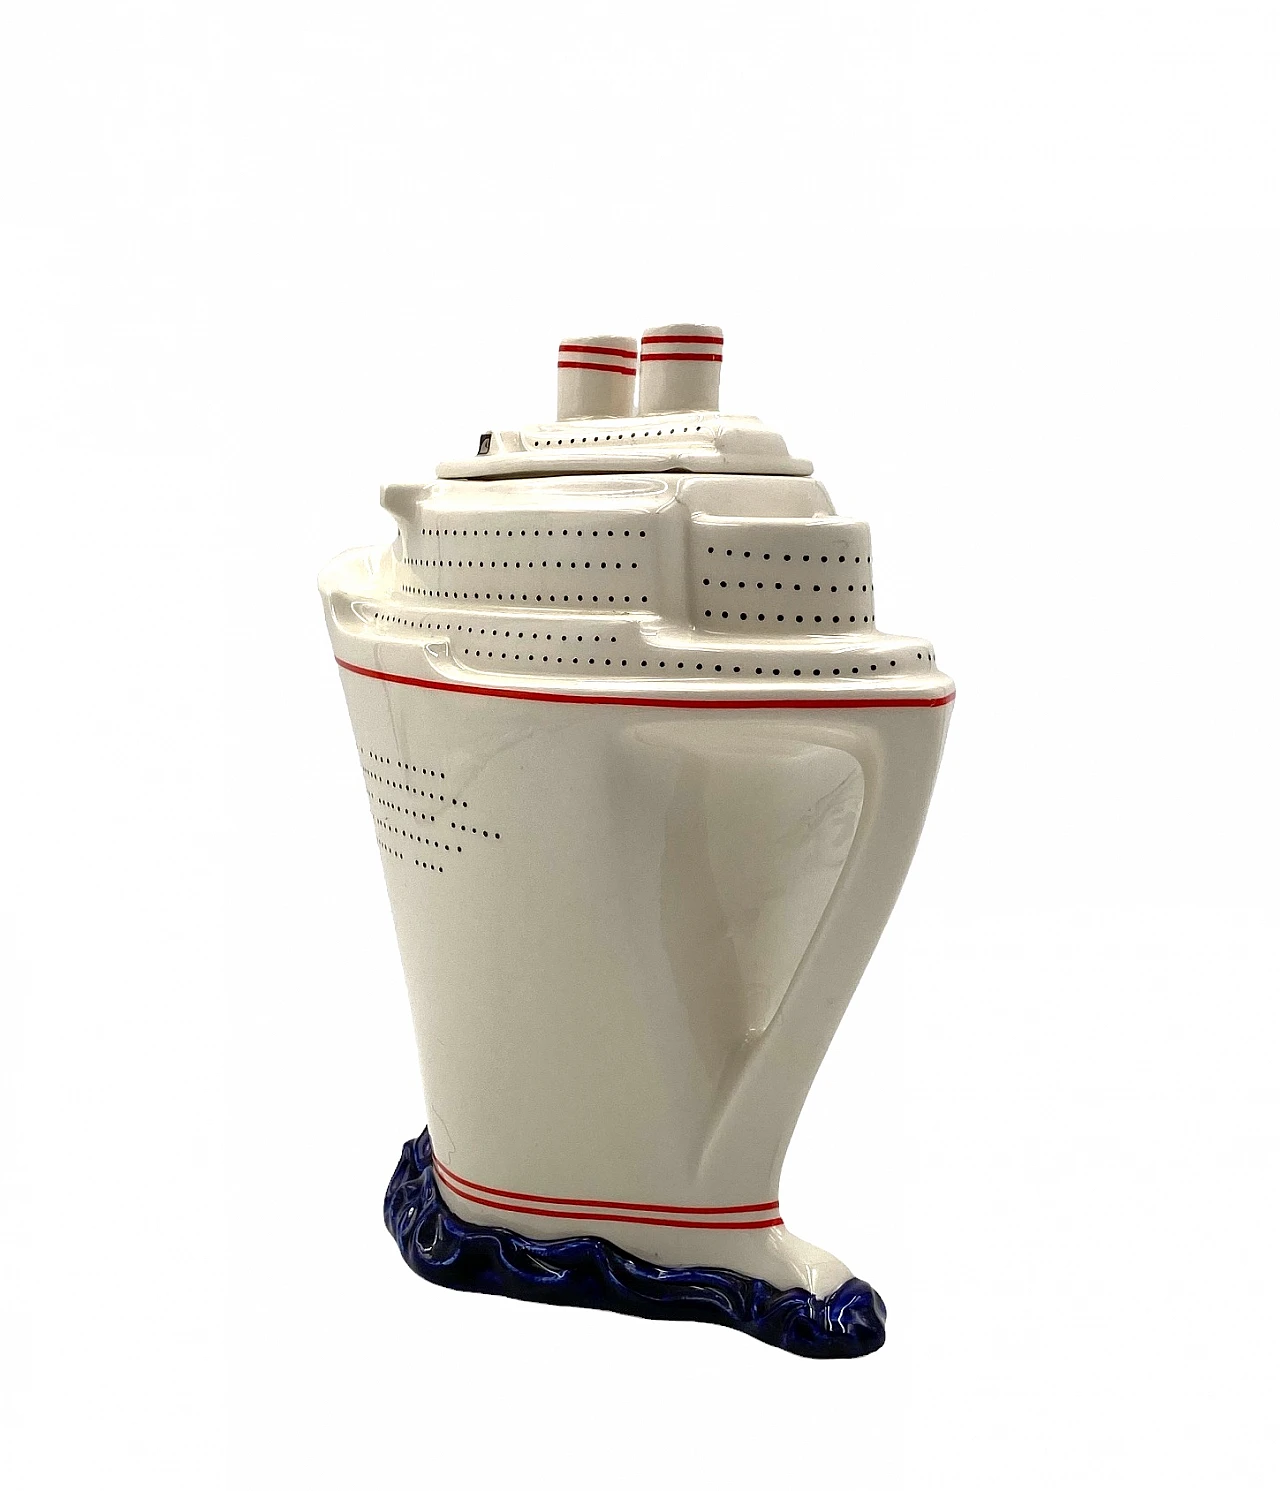 Queen Elizabeth II cruise ship teapot by Paul Cardew 20